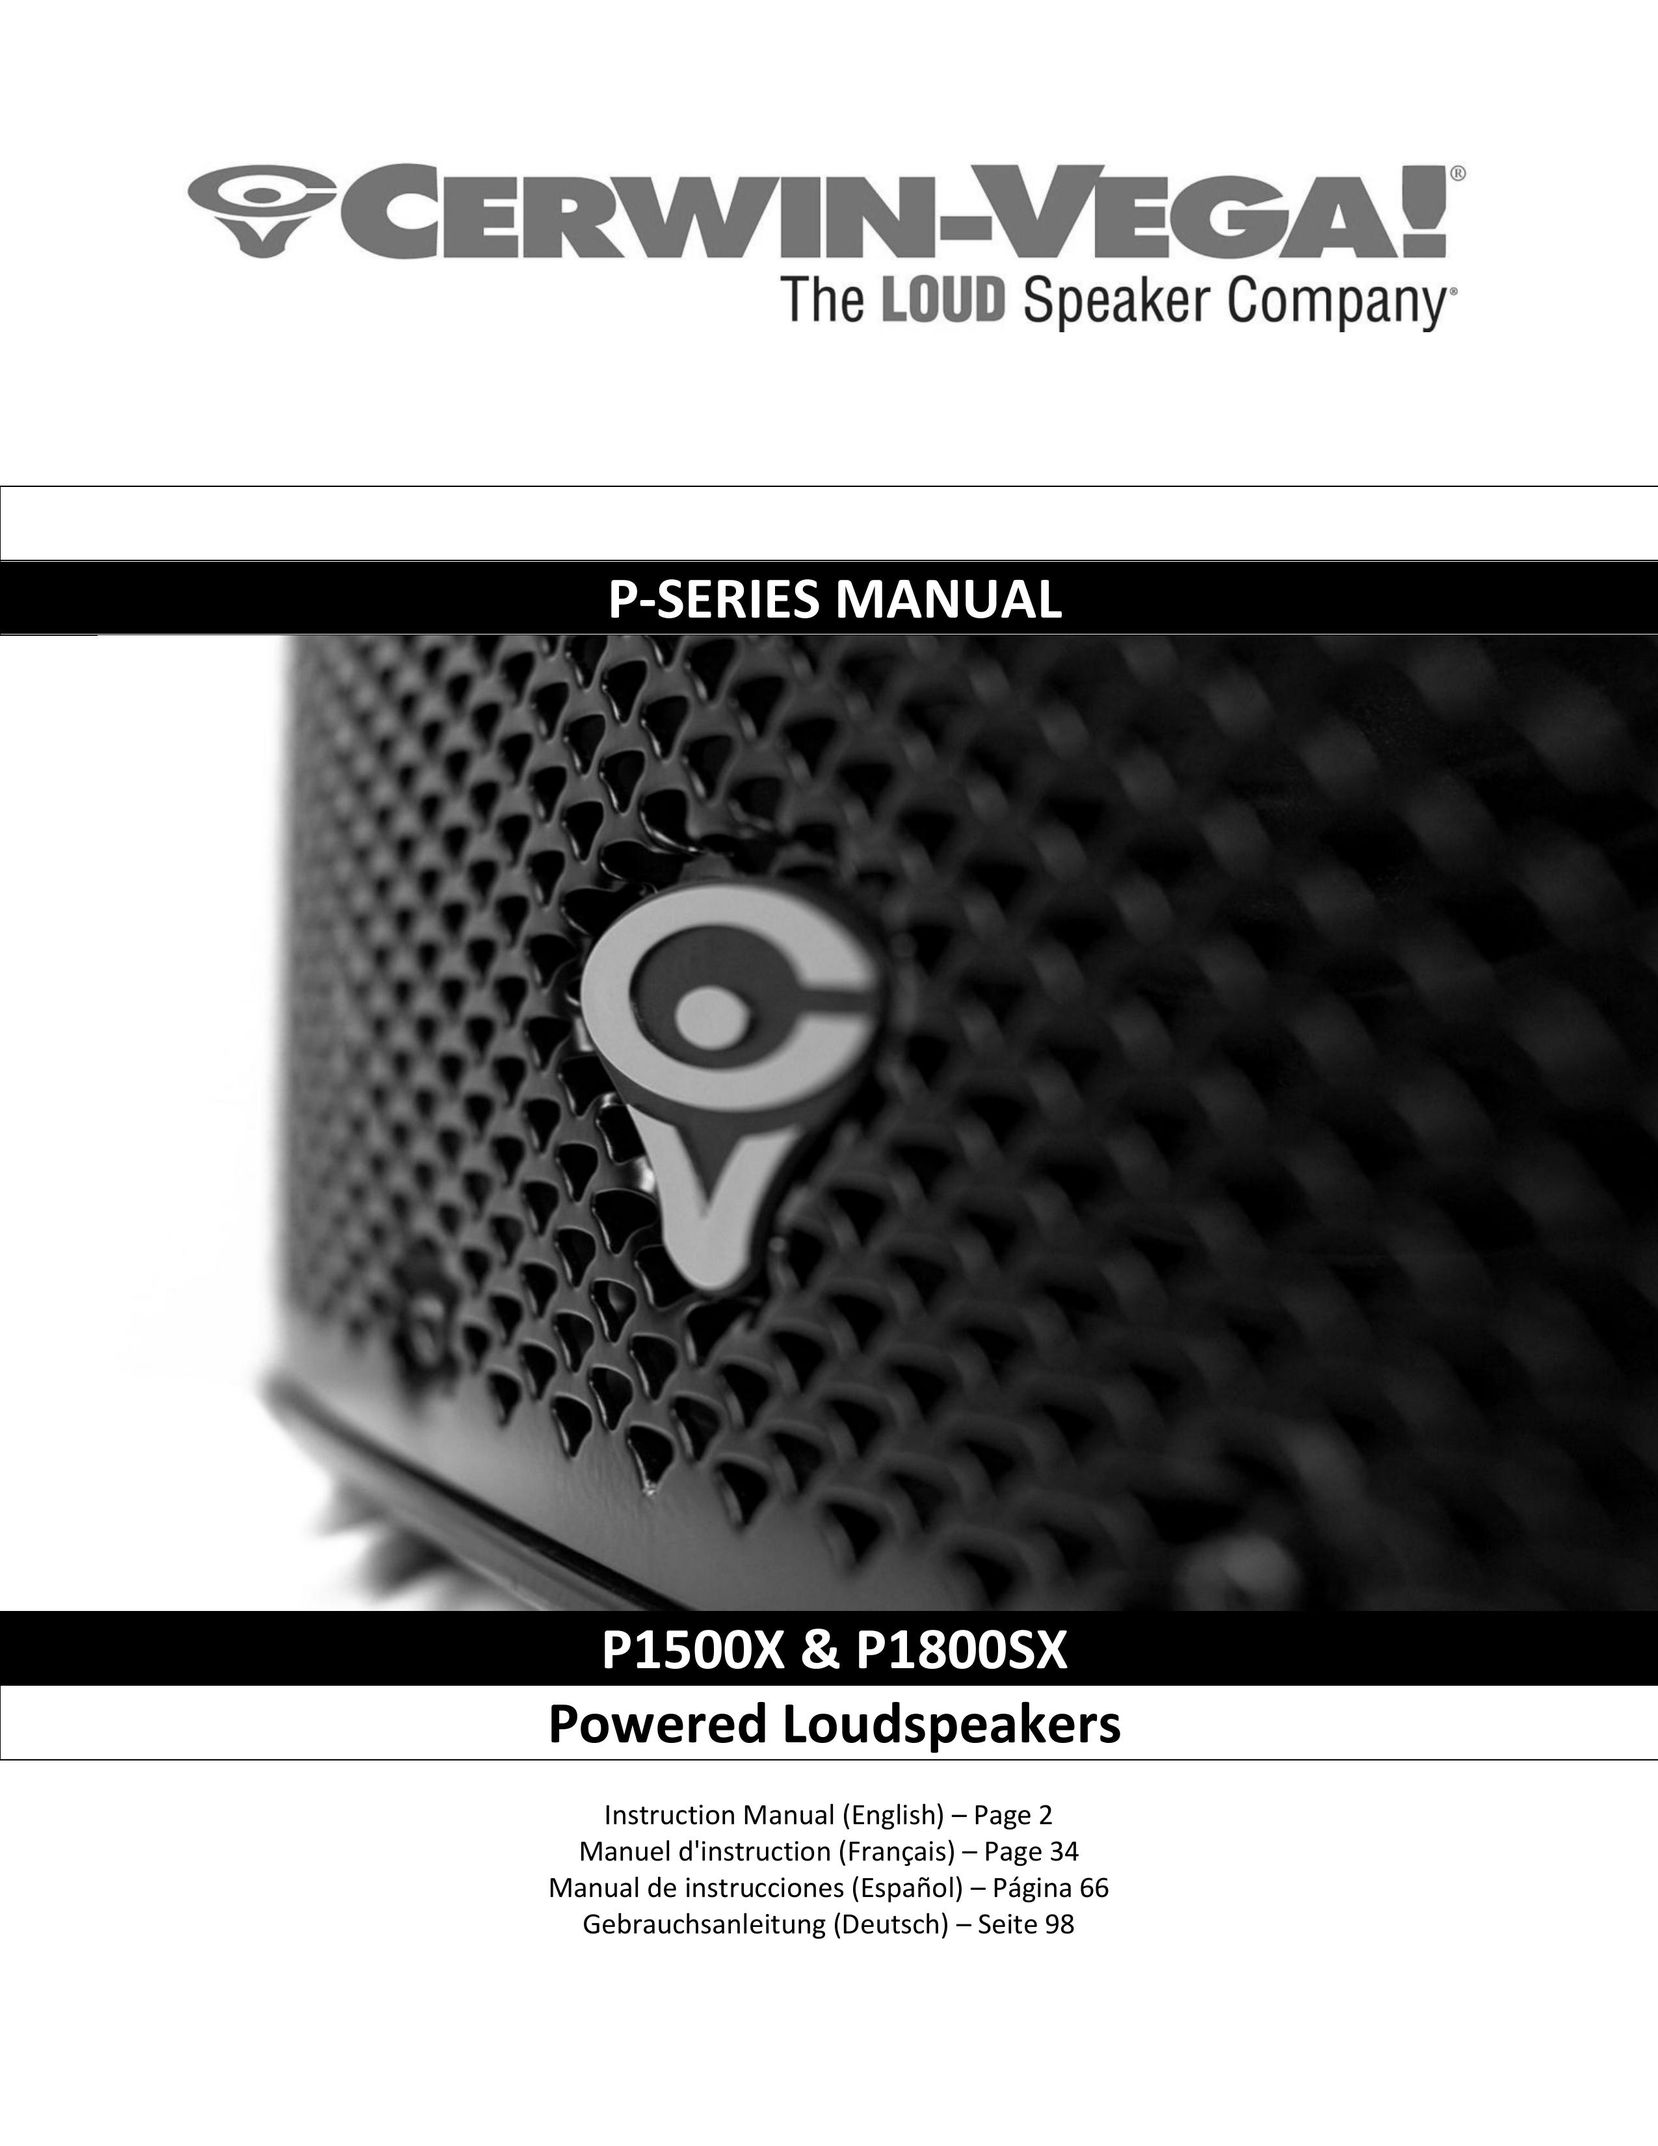 Cerwin-Vega P1800SX Car Speaker User Manual